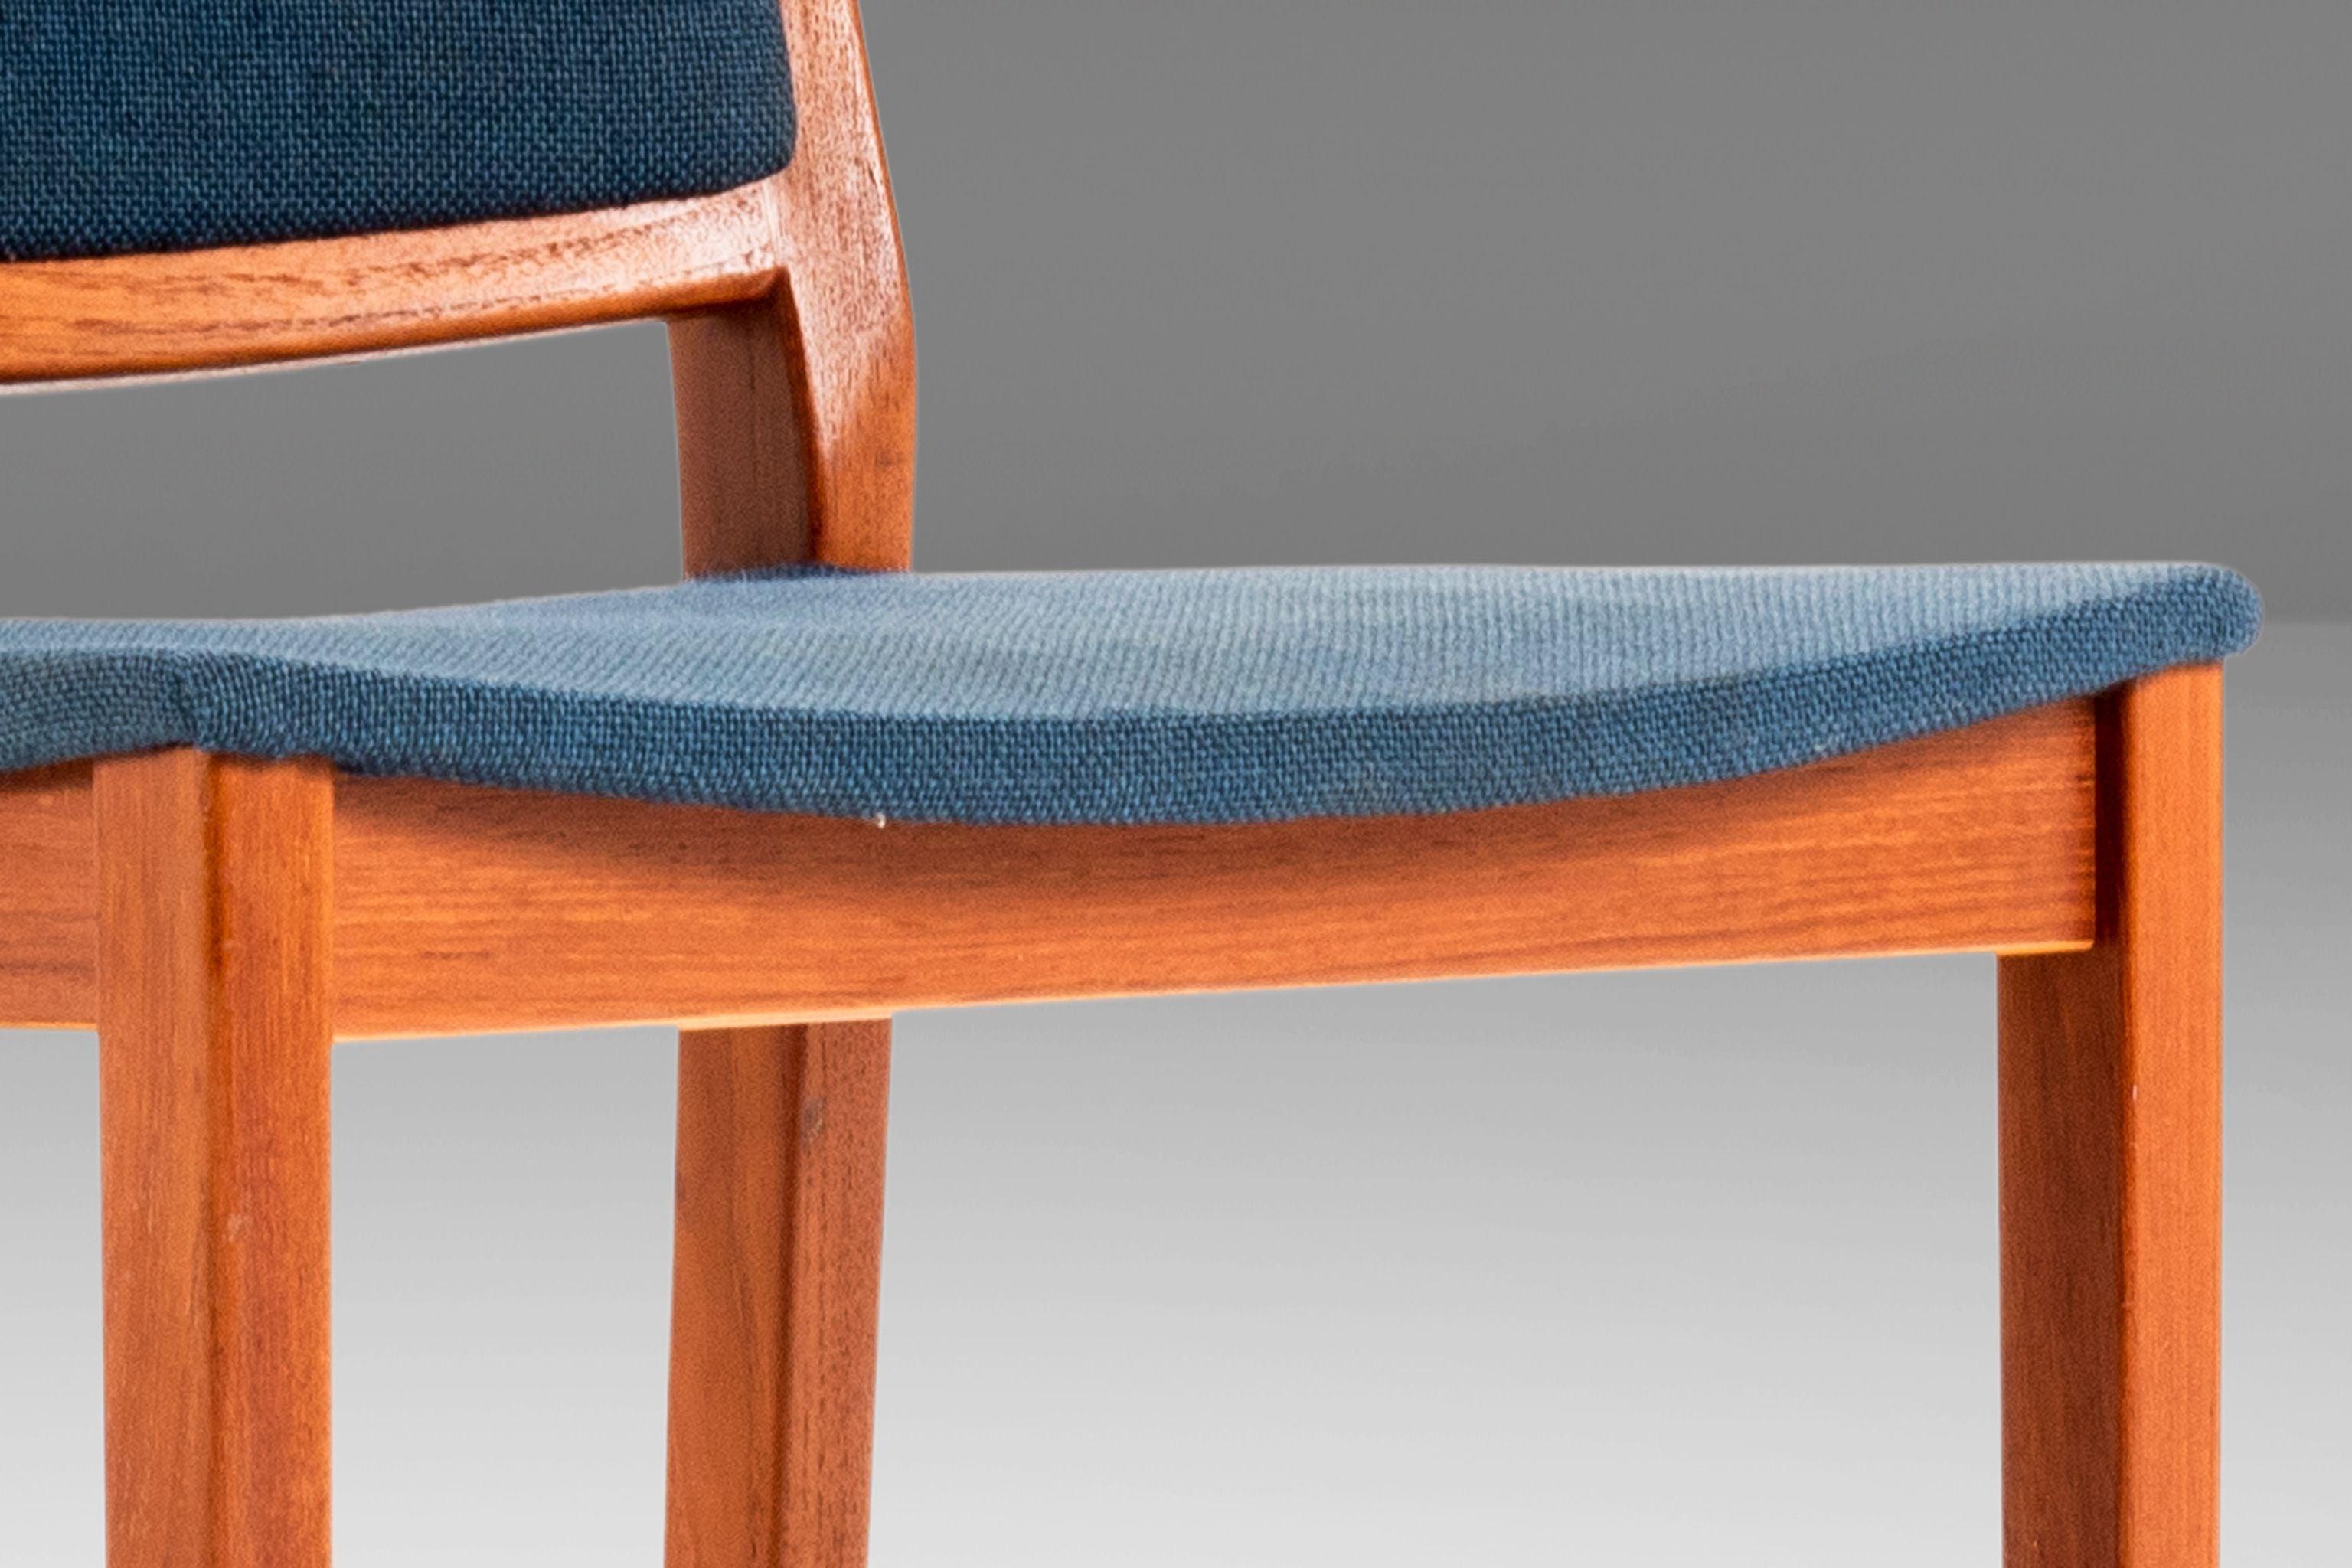 Parfaitement petites, ces splendides chaises d'appoint sont un exemple exceptionnel du design et de l'artisanat du début de la modernité suédoise. Encadré en teck massif avec des veines de bois exquises compensées par la tapisserie d'origine dans un